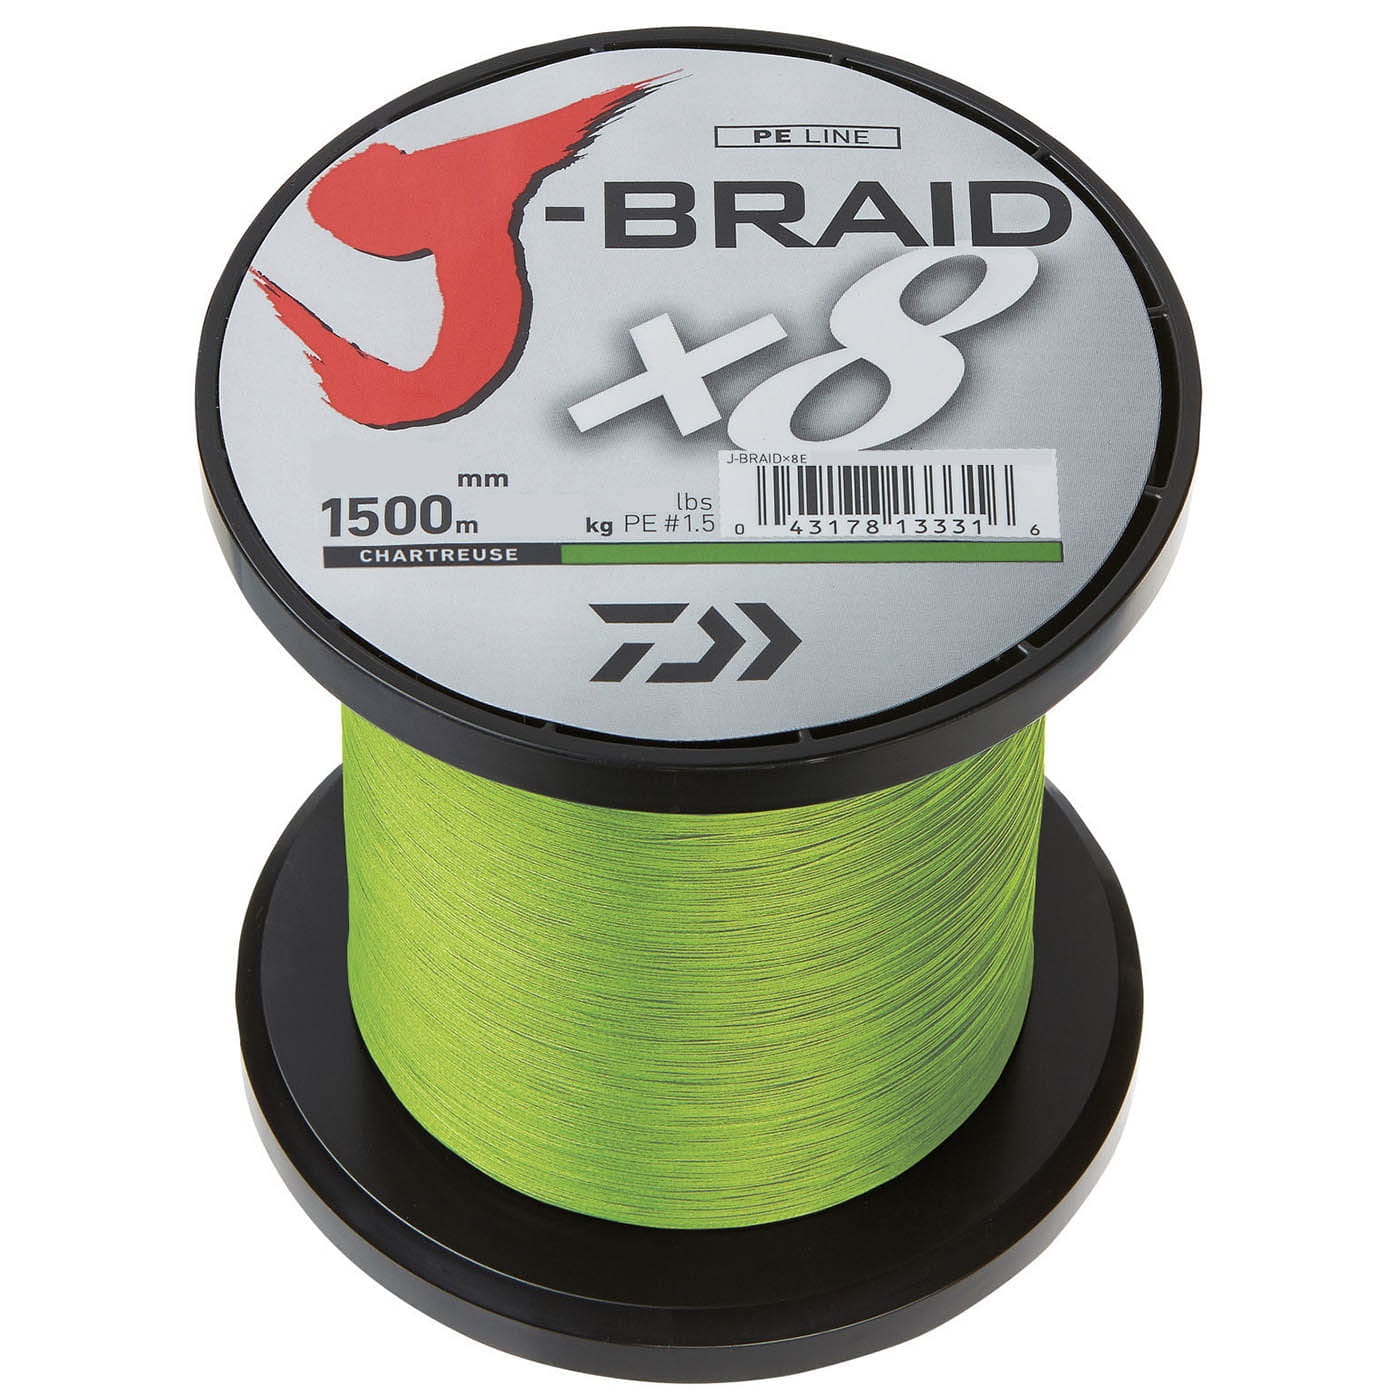 Daiwa J Braid x8 300 m Chartreuse Braided Fishing Line